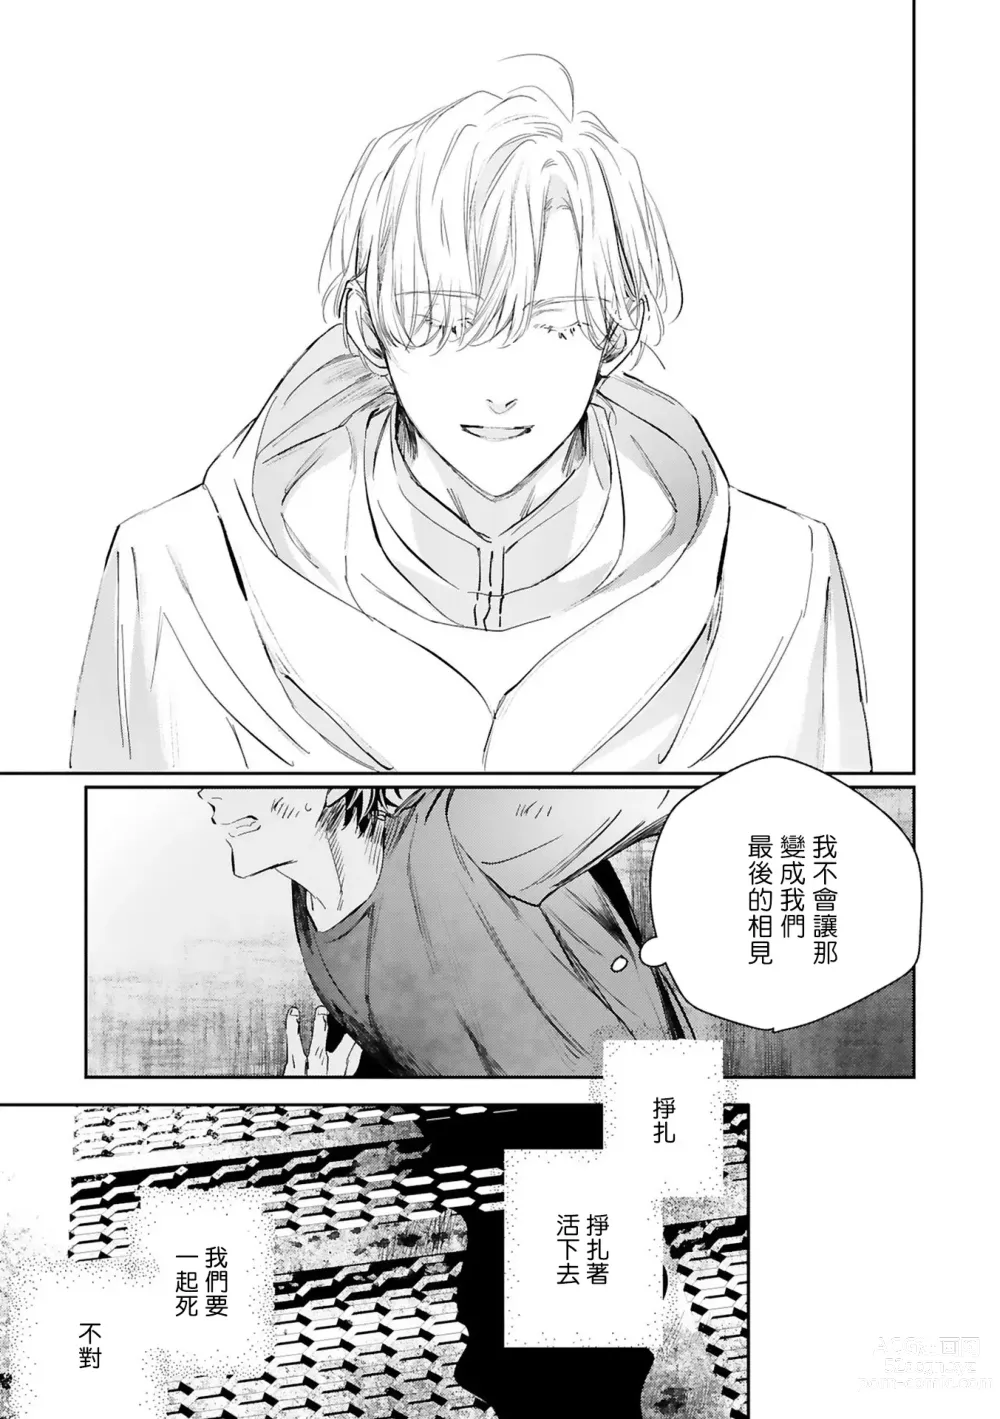 Page 440 of manga 末世青鸟 Ch. 4-10 + 特典 + 11-14